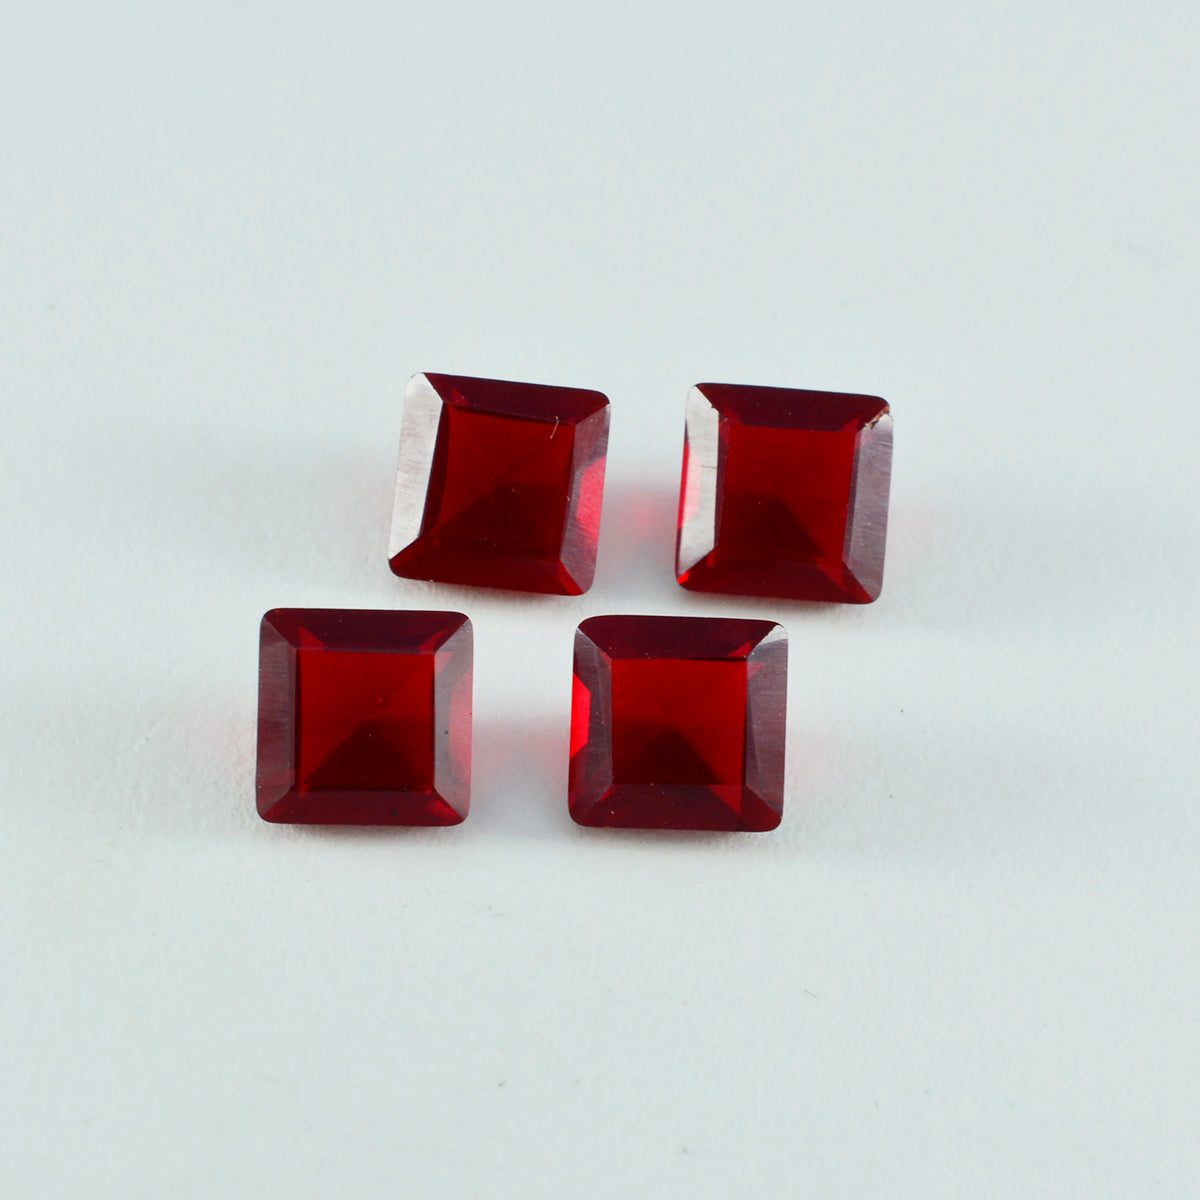 Riyogems 1 Stück roter Rubin mit CZ, facettiert, 10 x 10 mm, quadratische Form, süße Qualität, lose Edelsteine